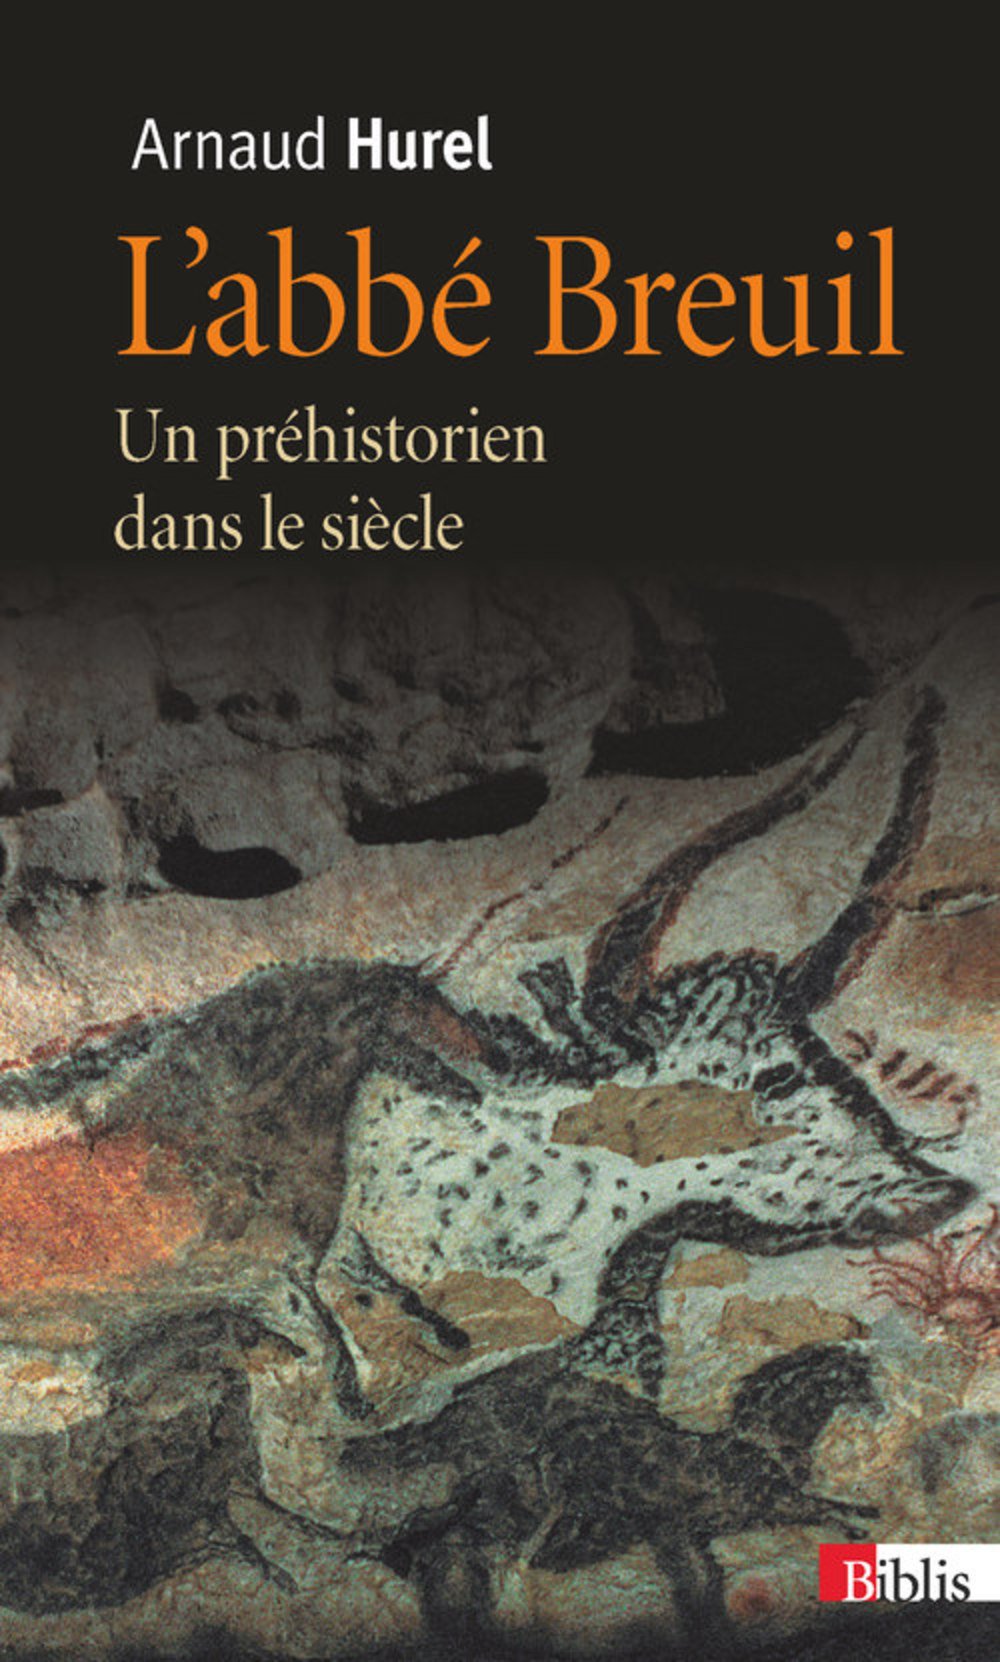 L'abbé Breuil. Un préhistorien dans le siècle, 2014, 456 p. Poche